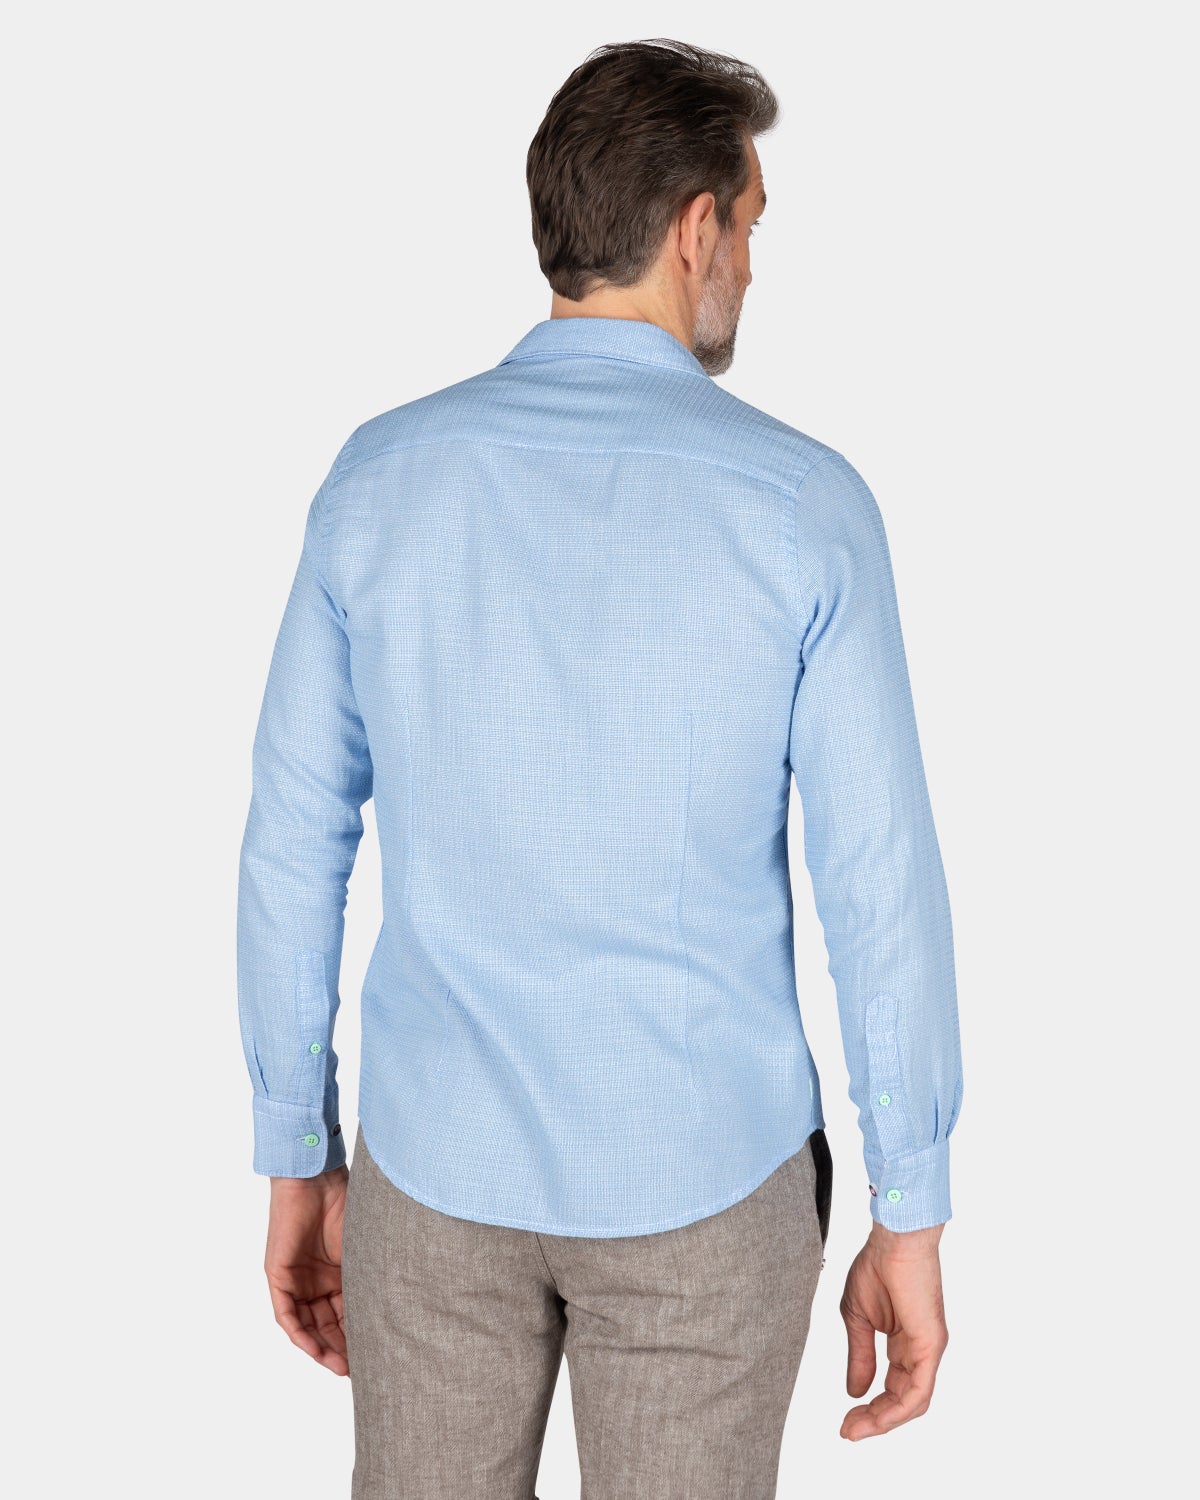 Baumwoll-Shirt - Light Blue